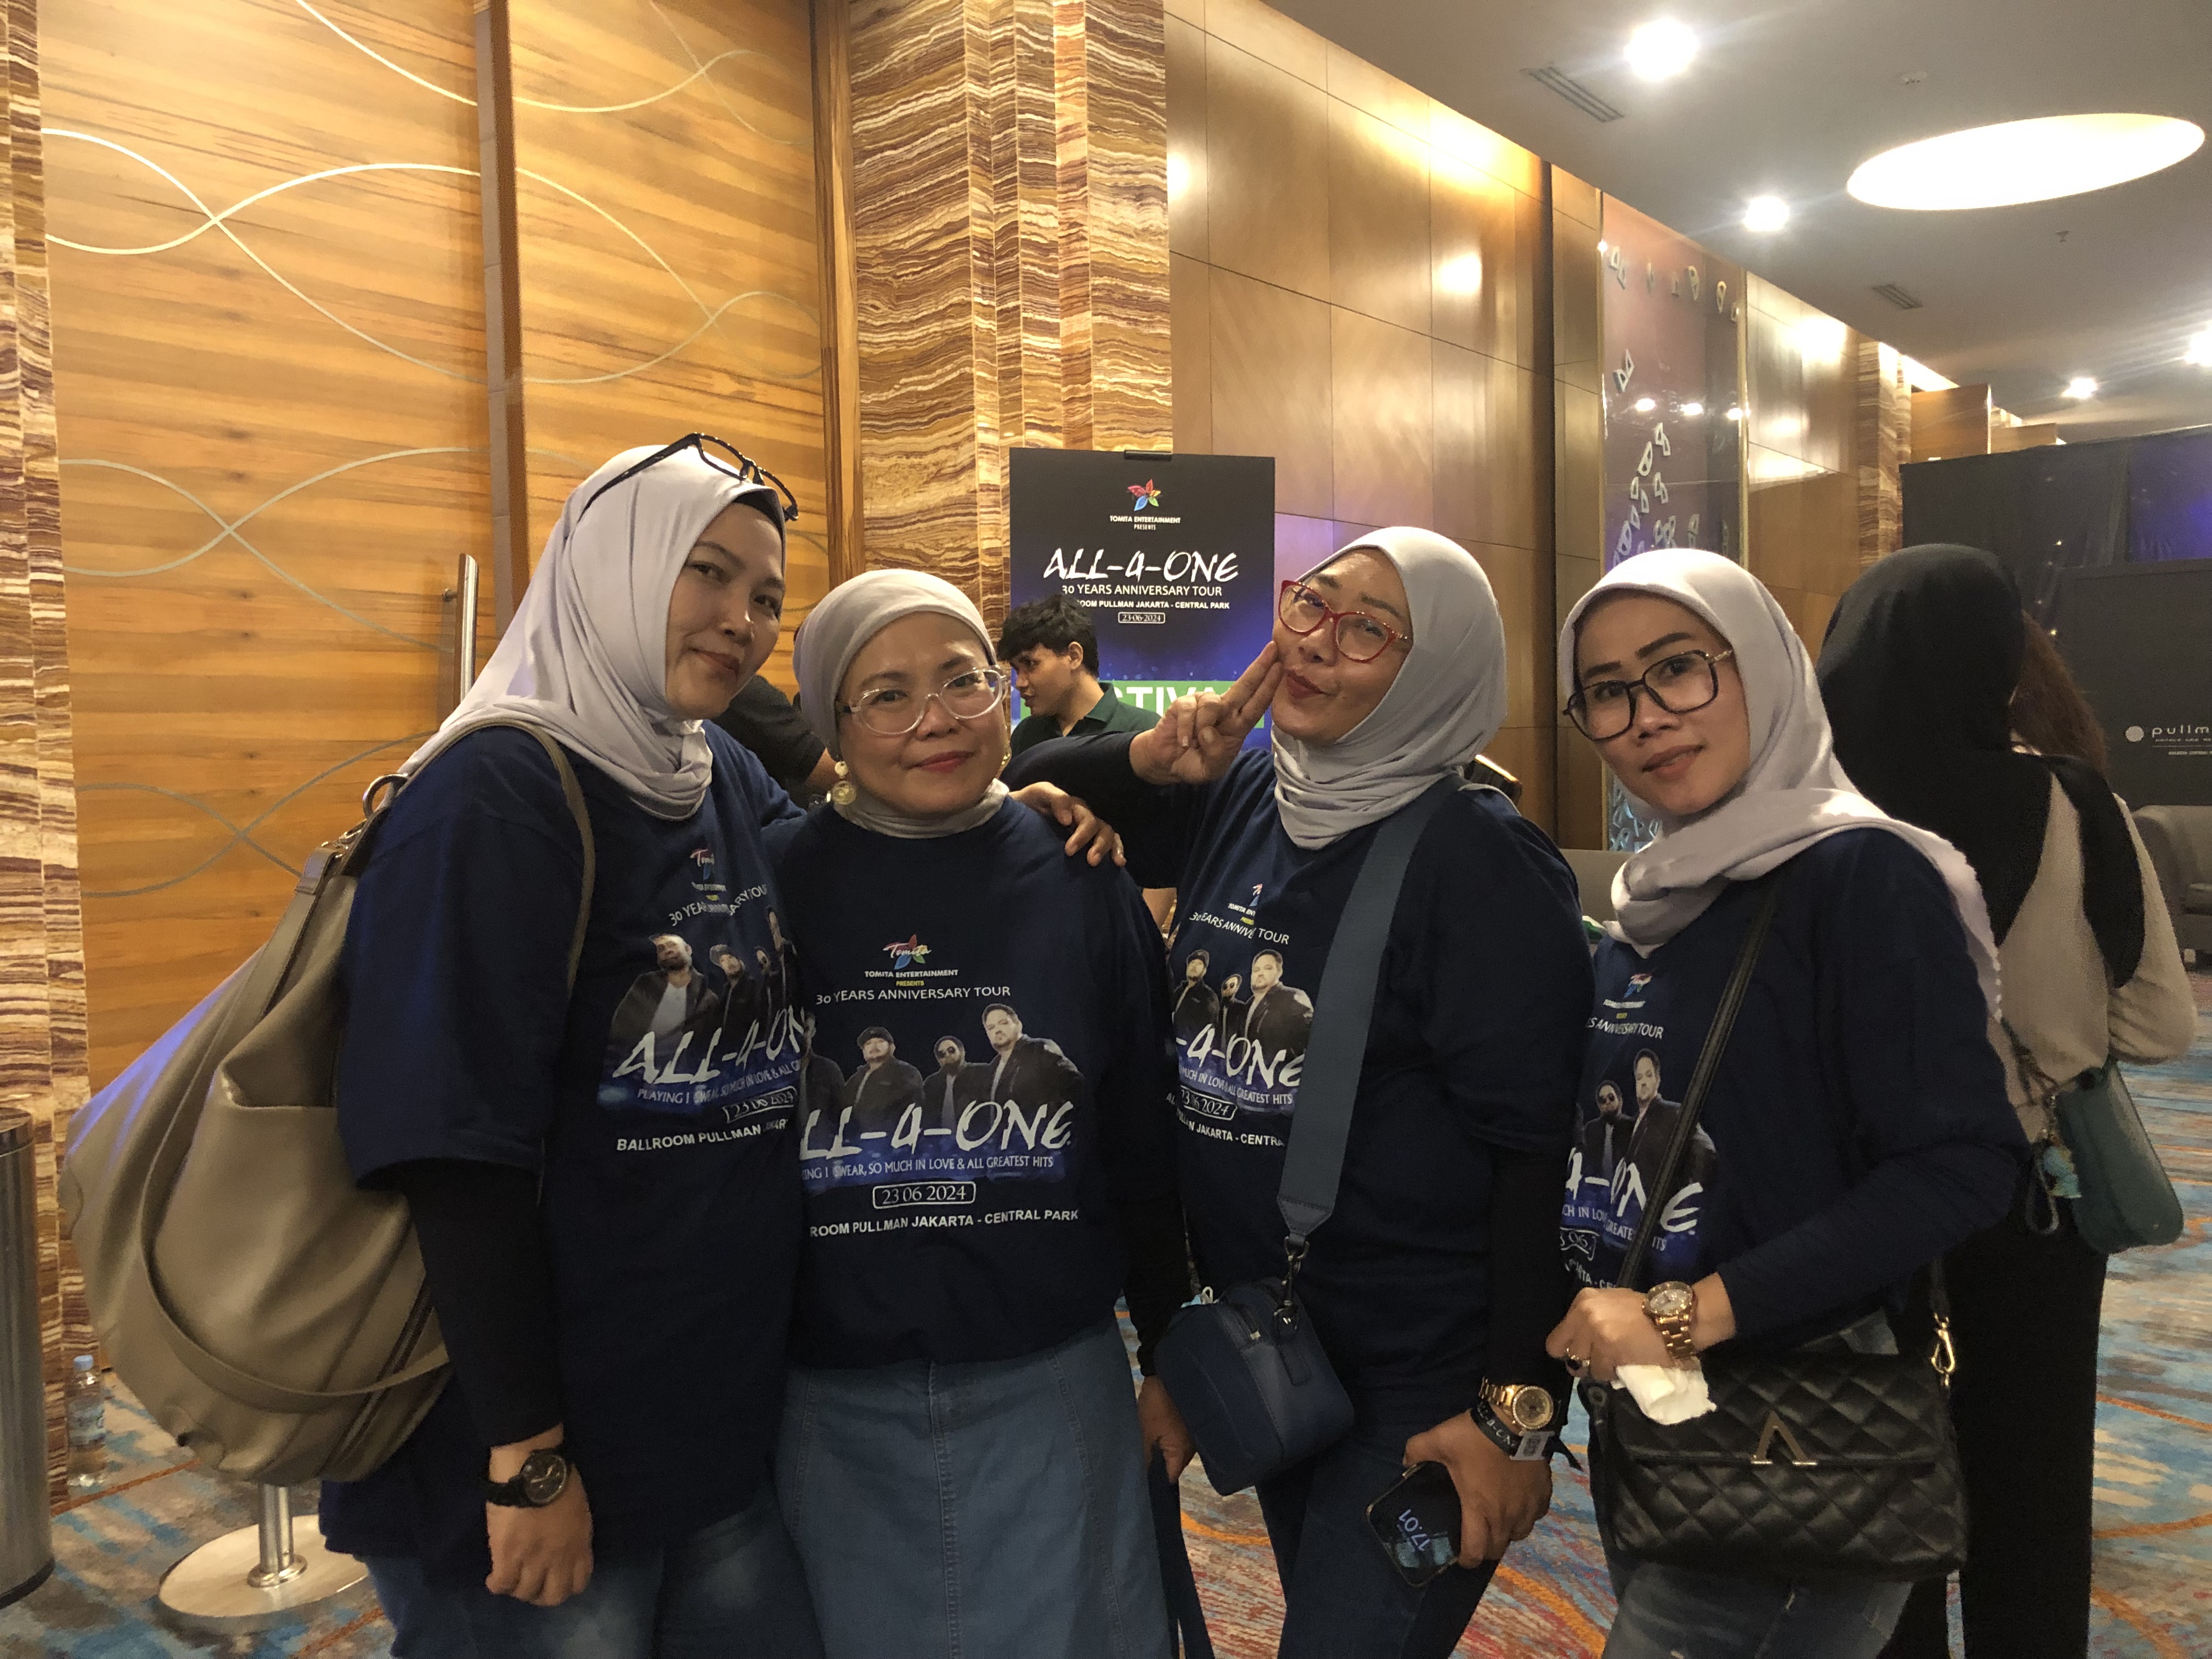 Cerita Fans Menunggu 30 Tahun, Akhirnya All 4 One Konser di Indonesia